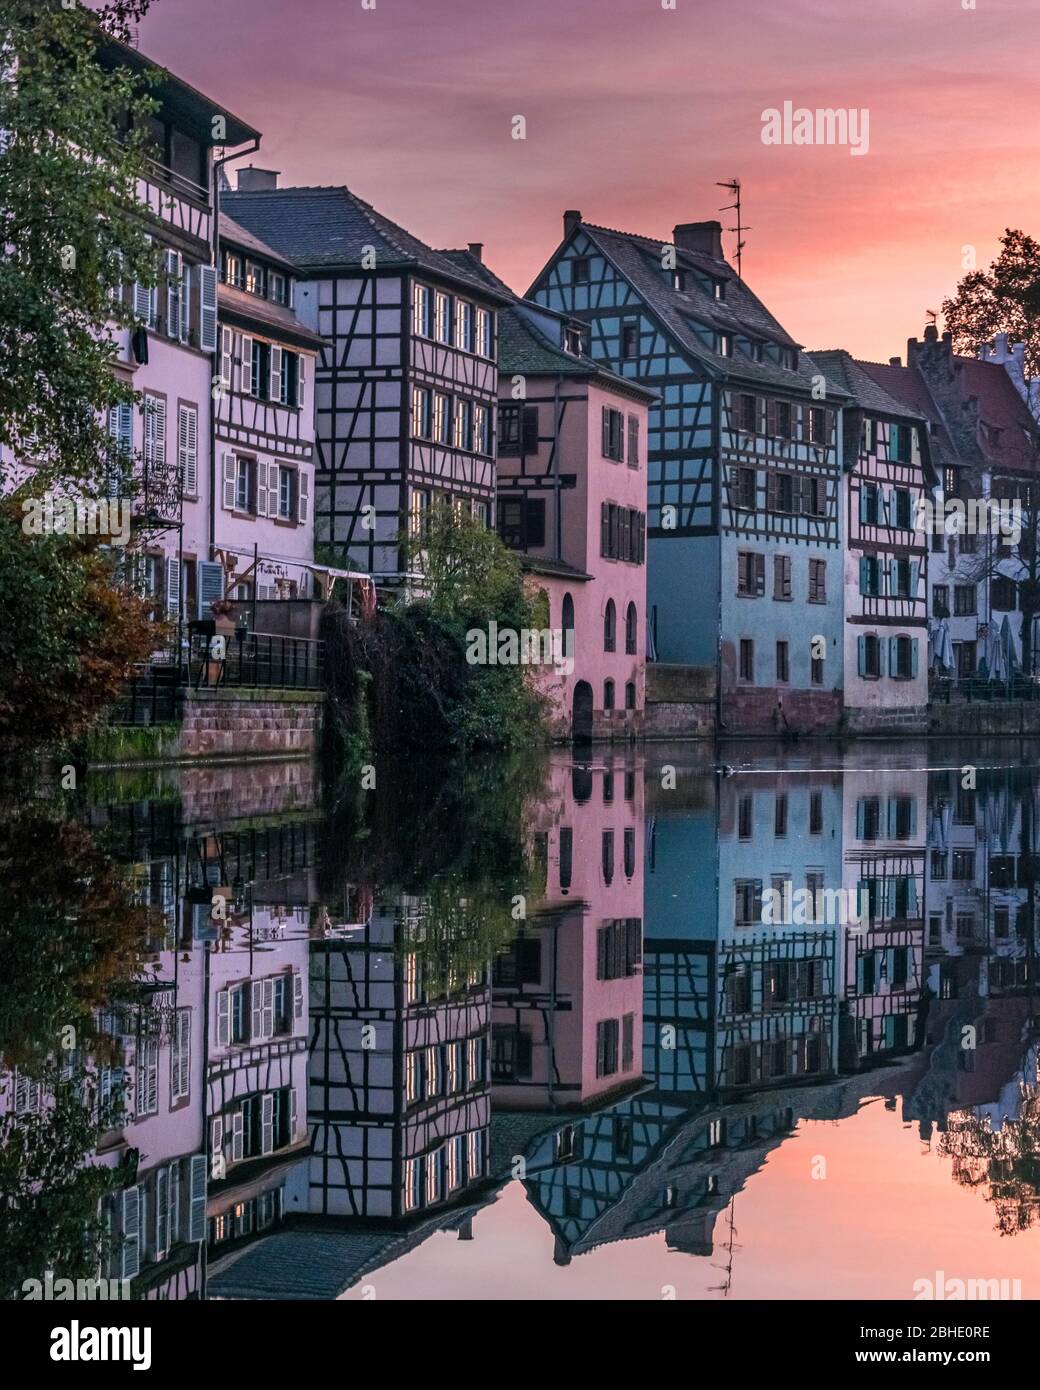 Gebäude Reflexion auf Kanal in Straßburg, Frankreich. Petite-France. Sonnenuntergang in Frankreich. Schöne Landschaft in Frankreich. Urlaubsideen in Frankreich Stockfoto